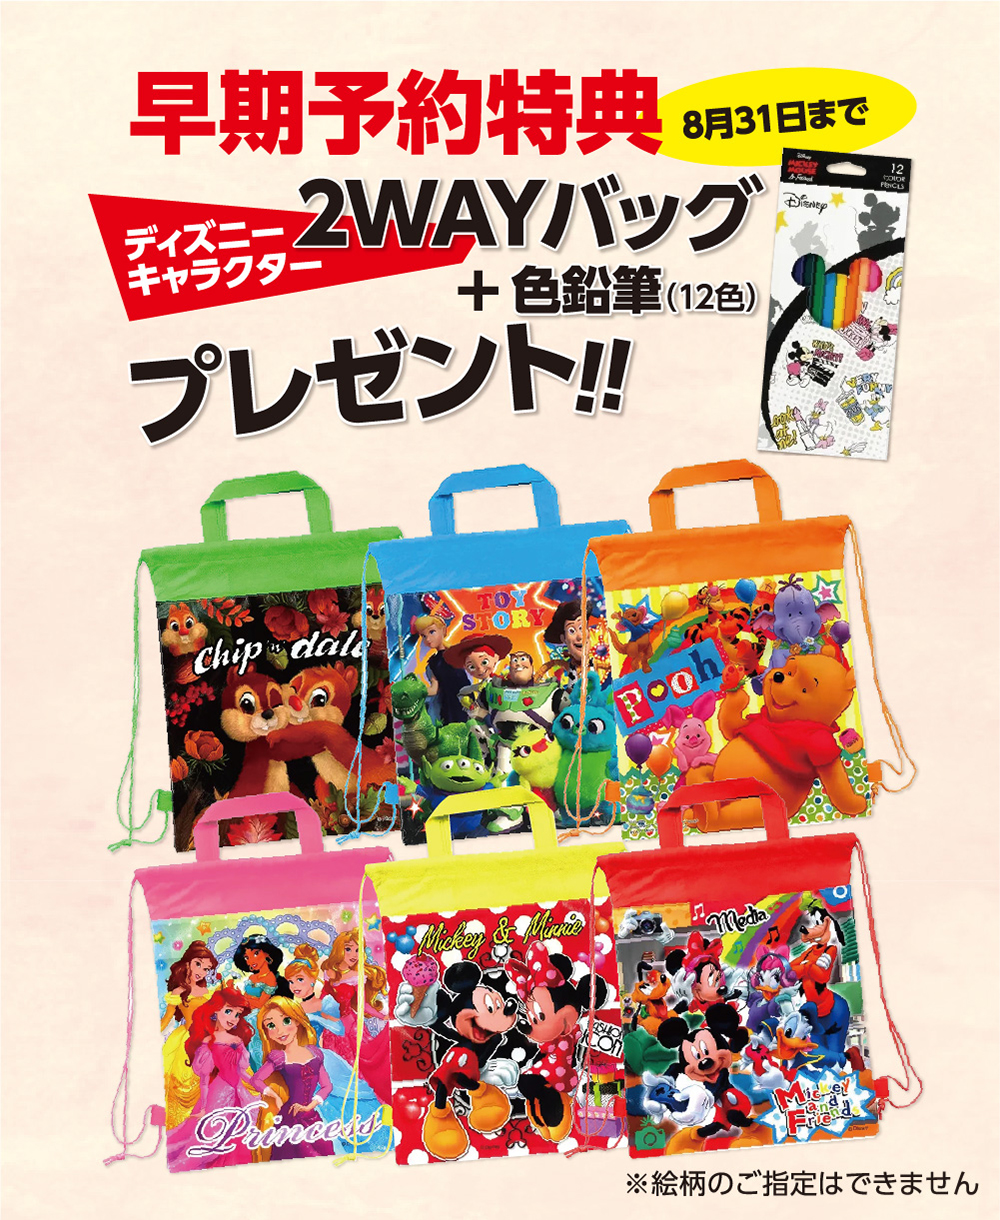 “早期予約特典3月31日まで。
        ディズニーキャラクター2WAYバッグ+色鉛筆（12色）プレゼント!!